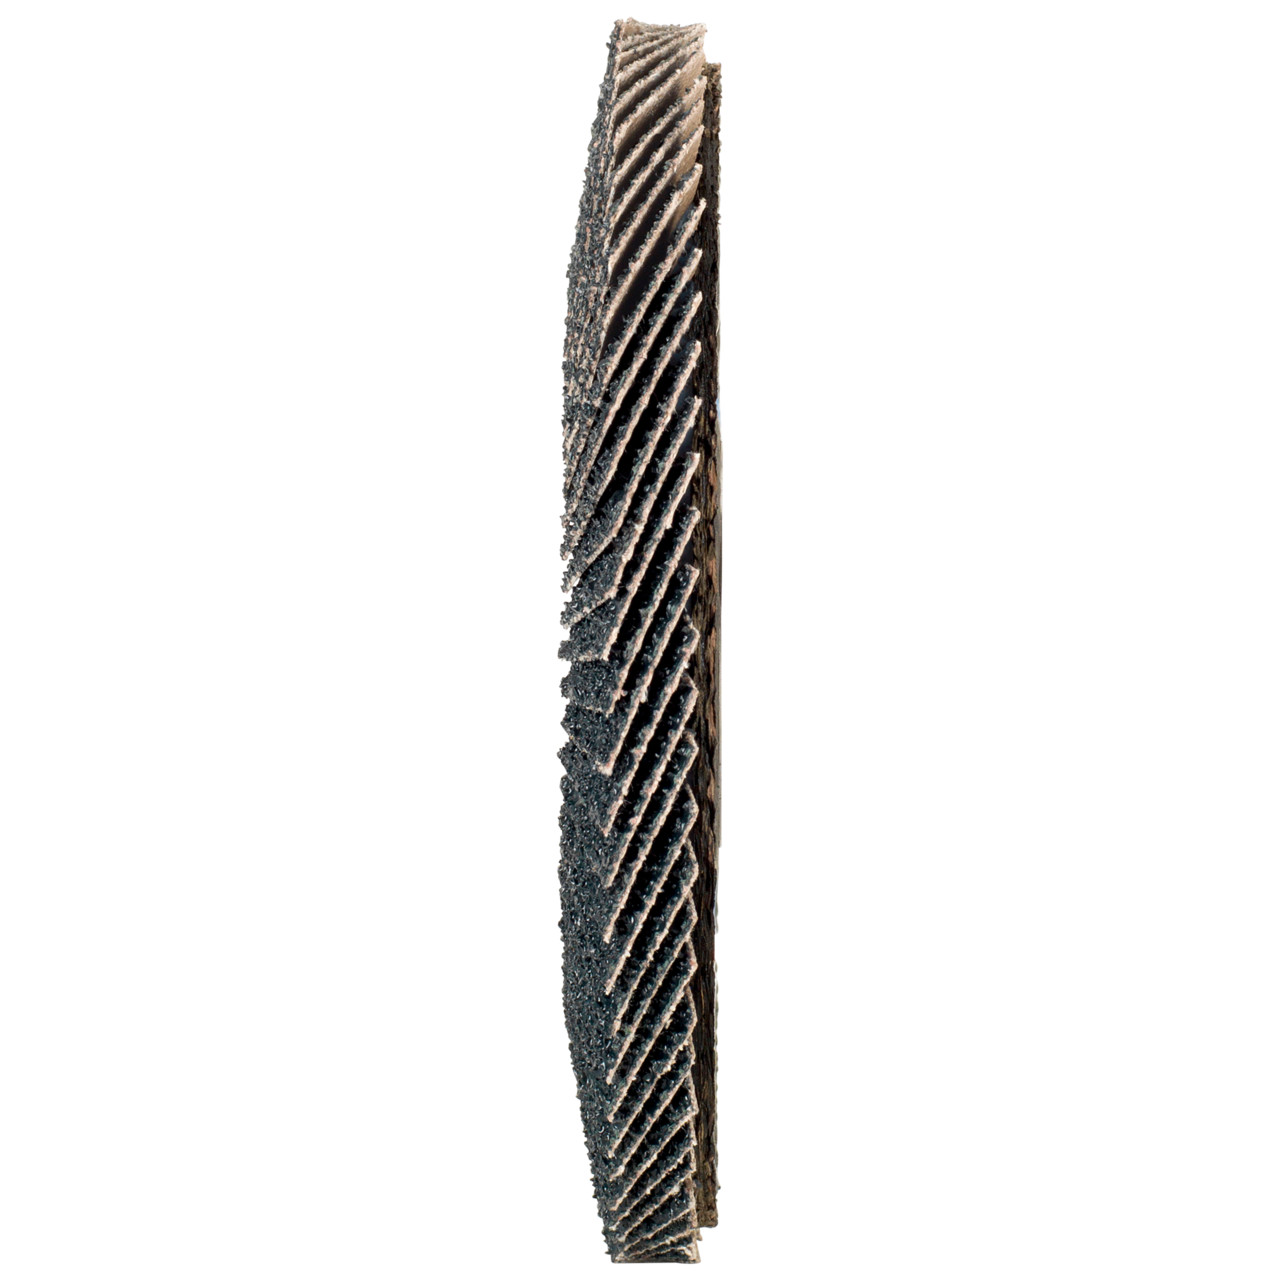 Tyrolit Arandela dentada DxH 125x22,2 2en1 para acero y acero inoxidable, P60, forma: 27A - versión desplazada (versión con cuerpo de soporte de fibra de vidrio), Art. 668664